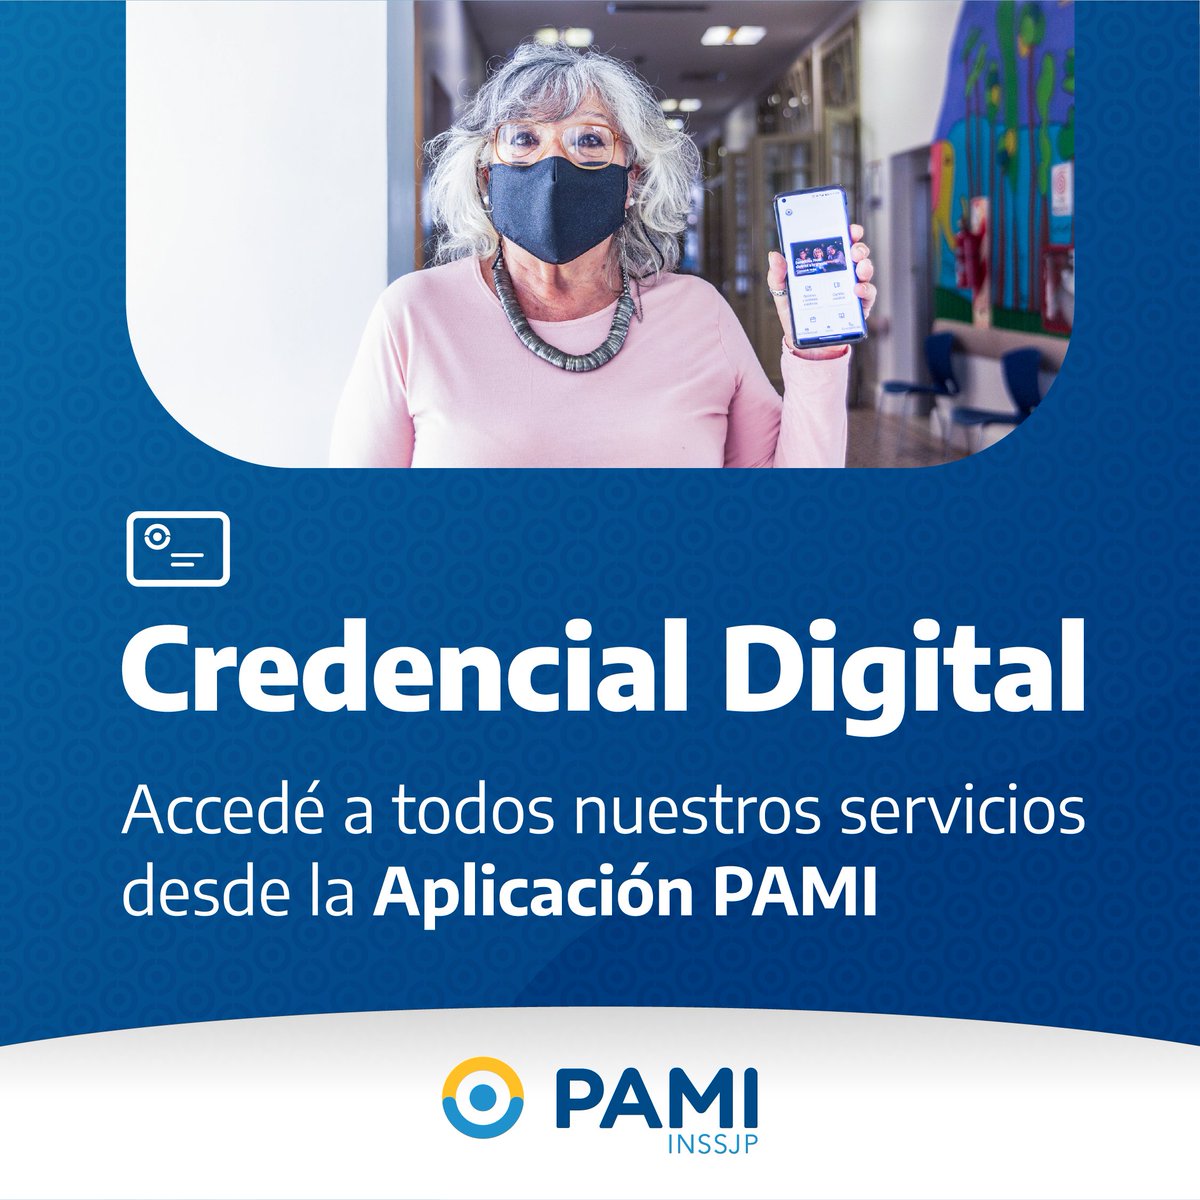 Con tu #CredencialDigital podés retirar tus Medicamentos Gratis en cualquier farmacia de la red PAMI, ir a tus consultas médicas y acceder a todos los beneficios que la Comunidad PAMI tiene para vos.